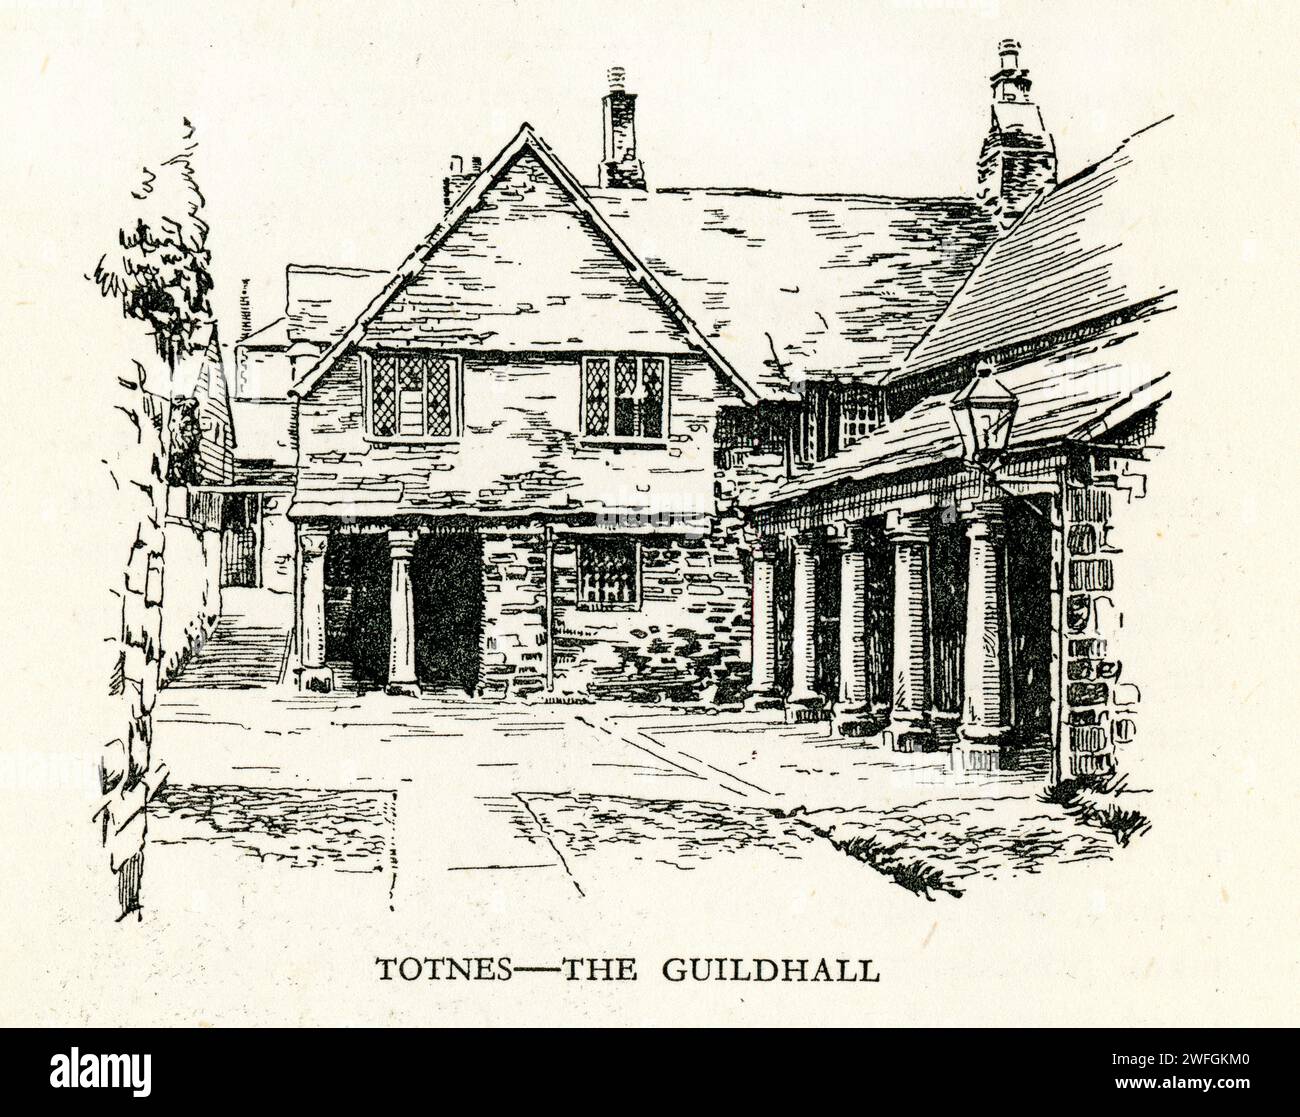 Schizzo a penna e inchiostro - Totnes - la Guildhall. Dal libro Glorious Devon. Di S.P.B. Mais, pubblicato da London Great Western Railway Company, 1928 Foto Stock